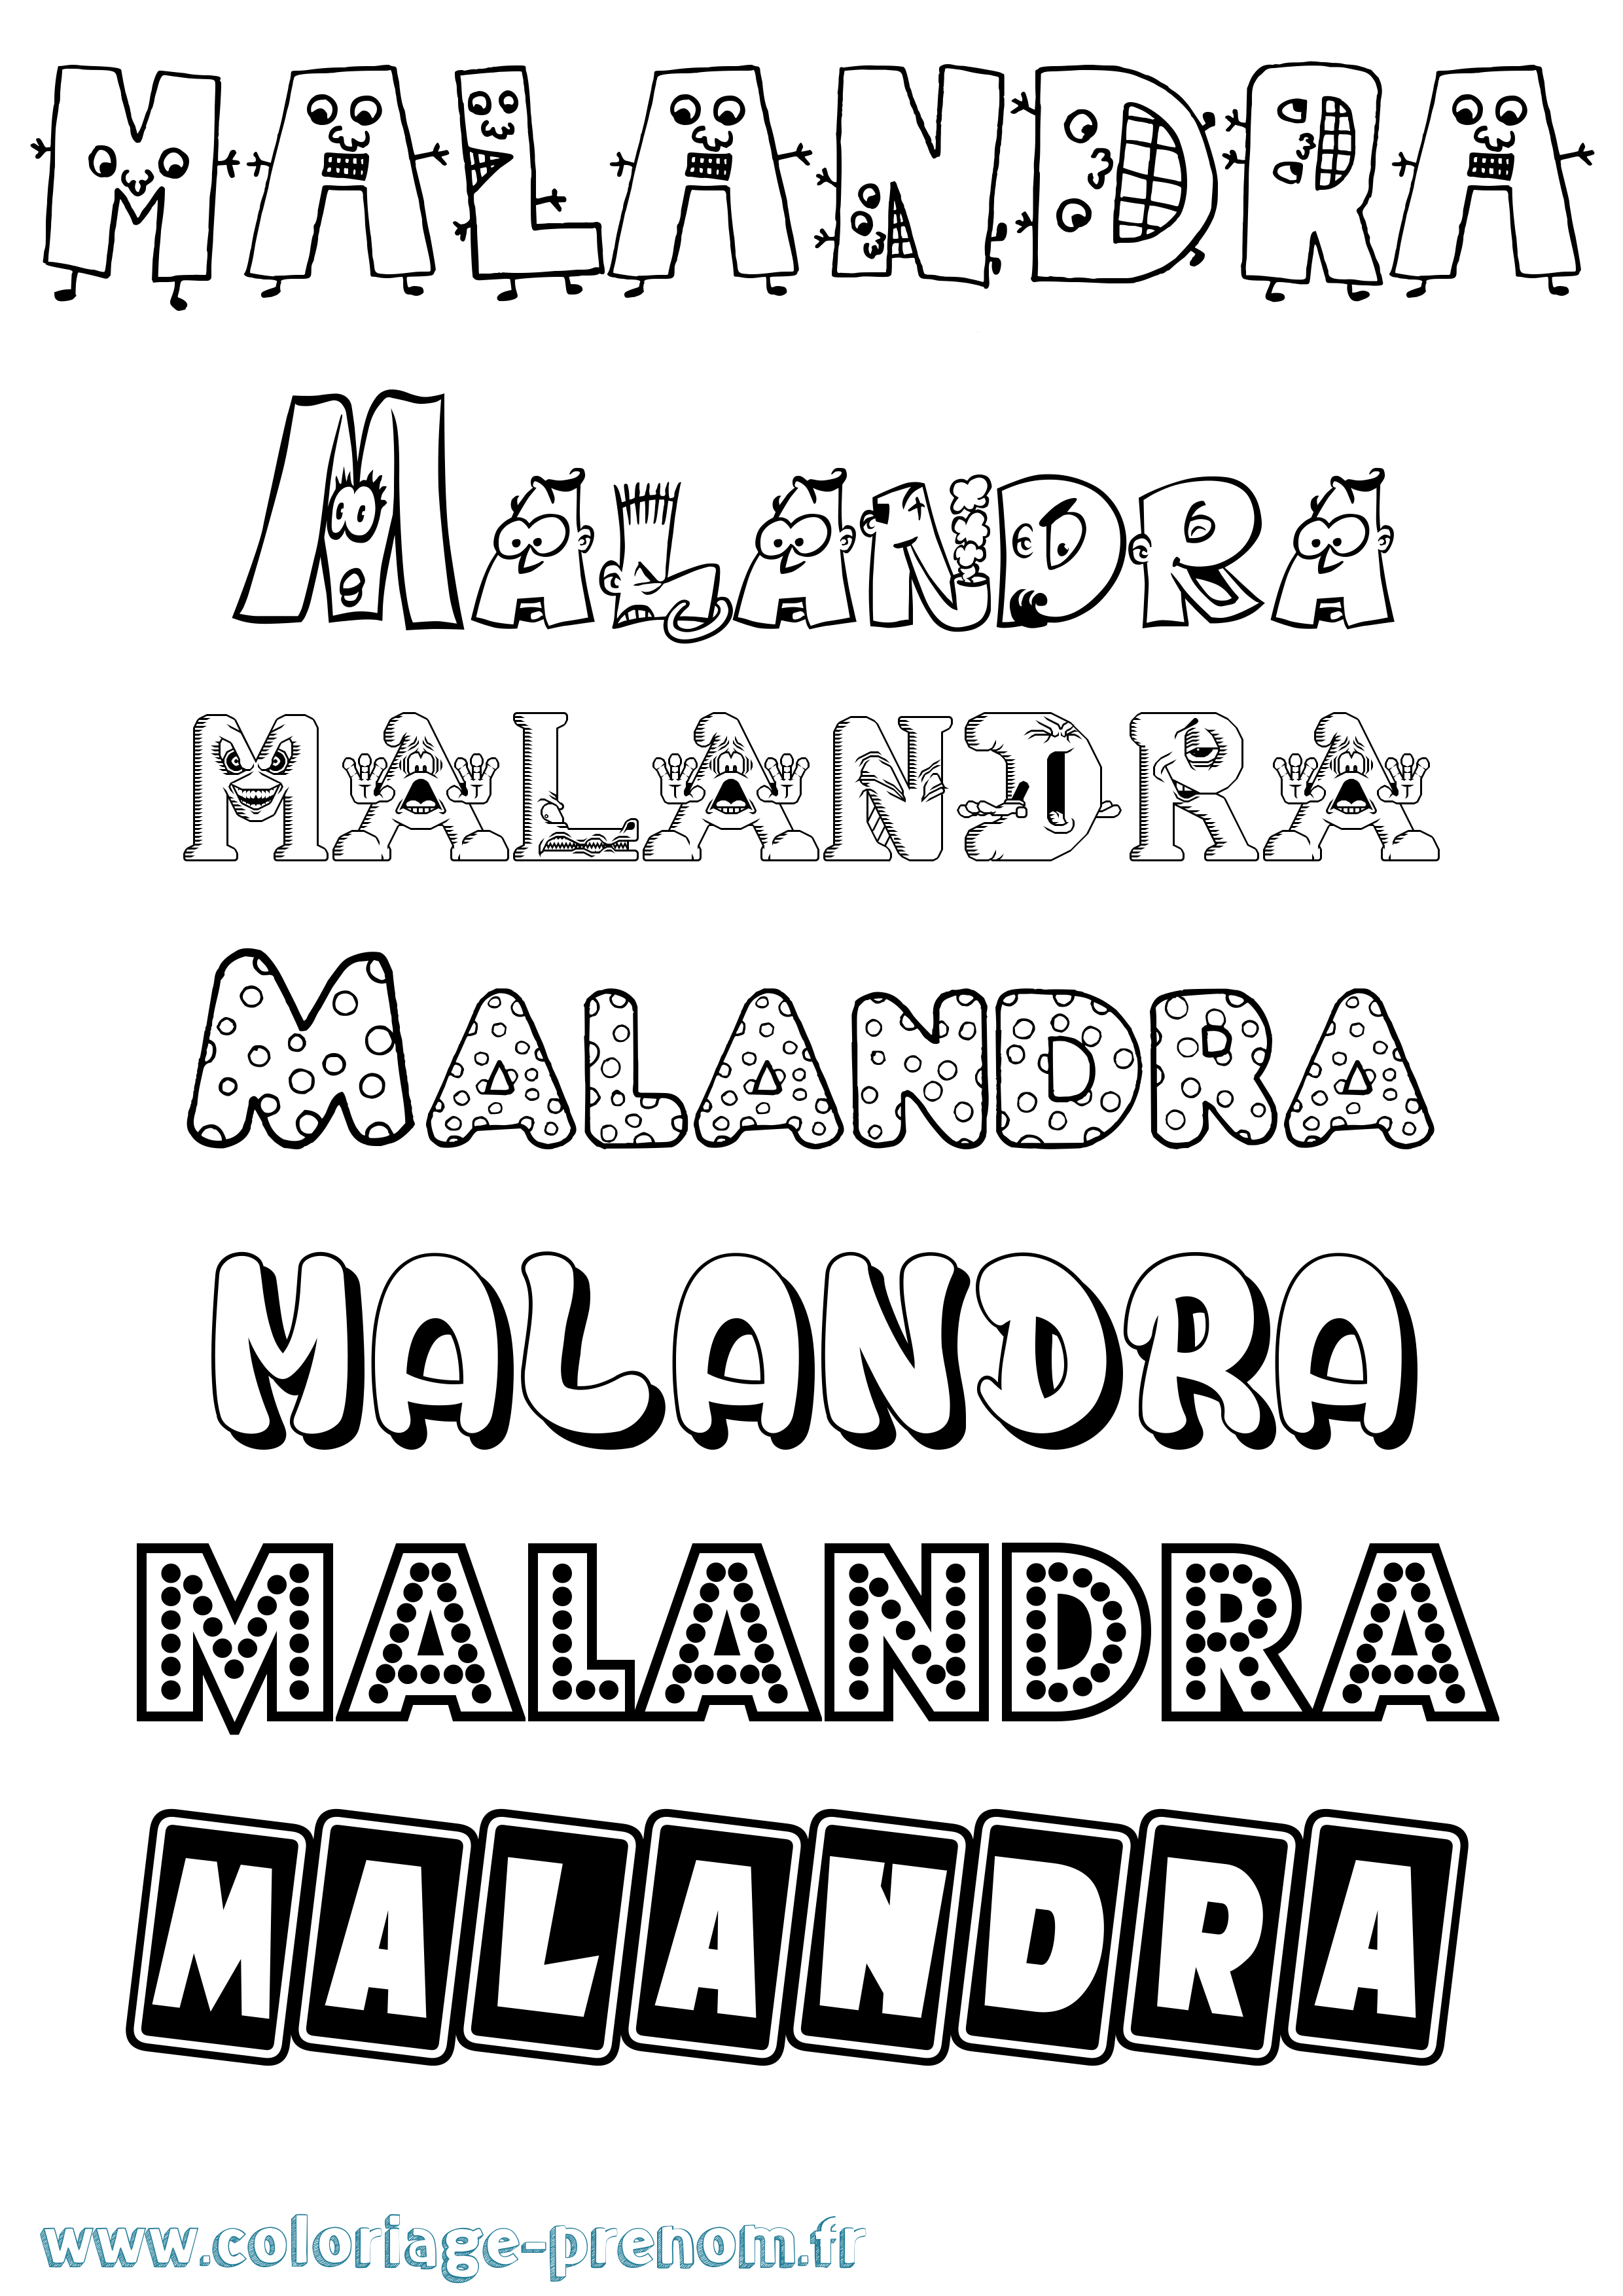 Coloriage prénom Malandra Fun